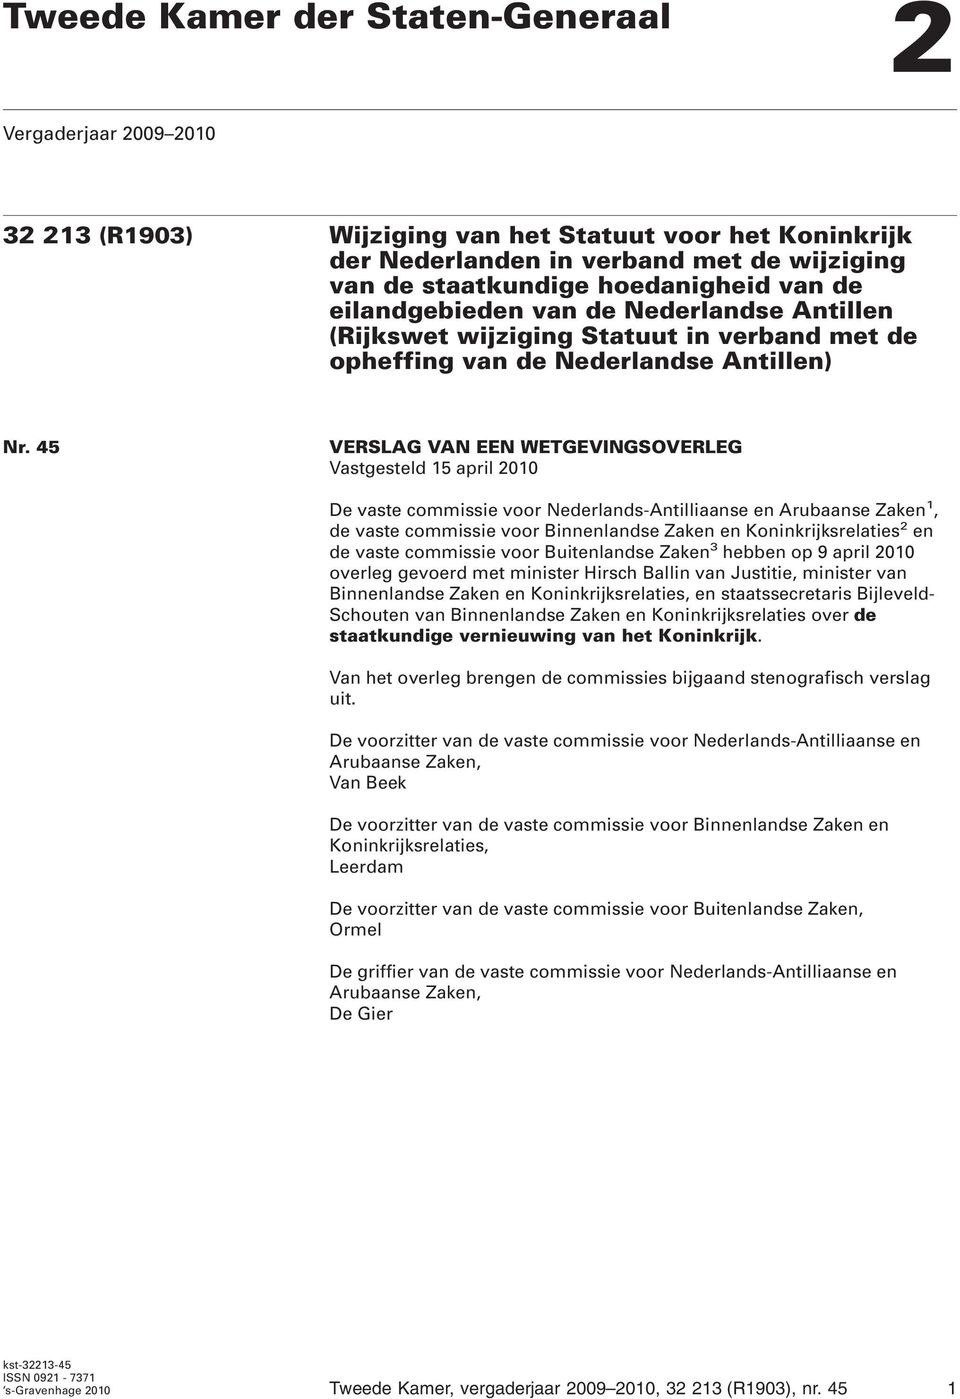 45 VERSLAG VAN EEN WETGEVINGSOVERLEG Vastgesteld 15 april 2010 De vaste commissie voor Nederlands-Antilliaanse en Arubaanse Zaken 1, de vaste commissie voor Binnenlandse Zaken en Koninkrijksrelaties